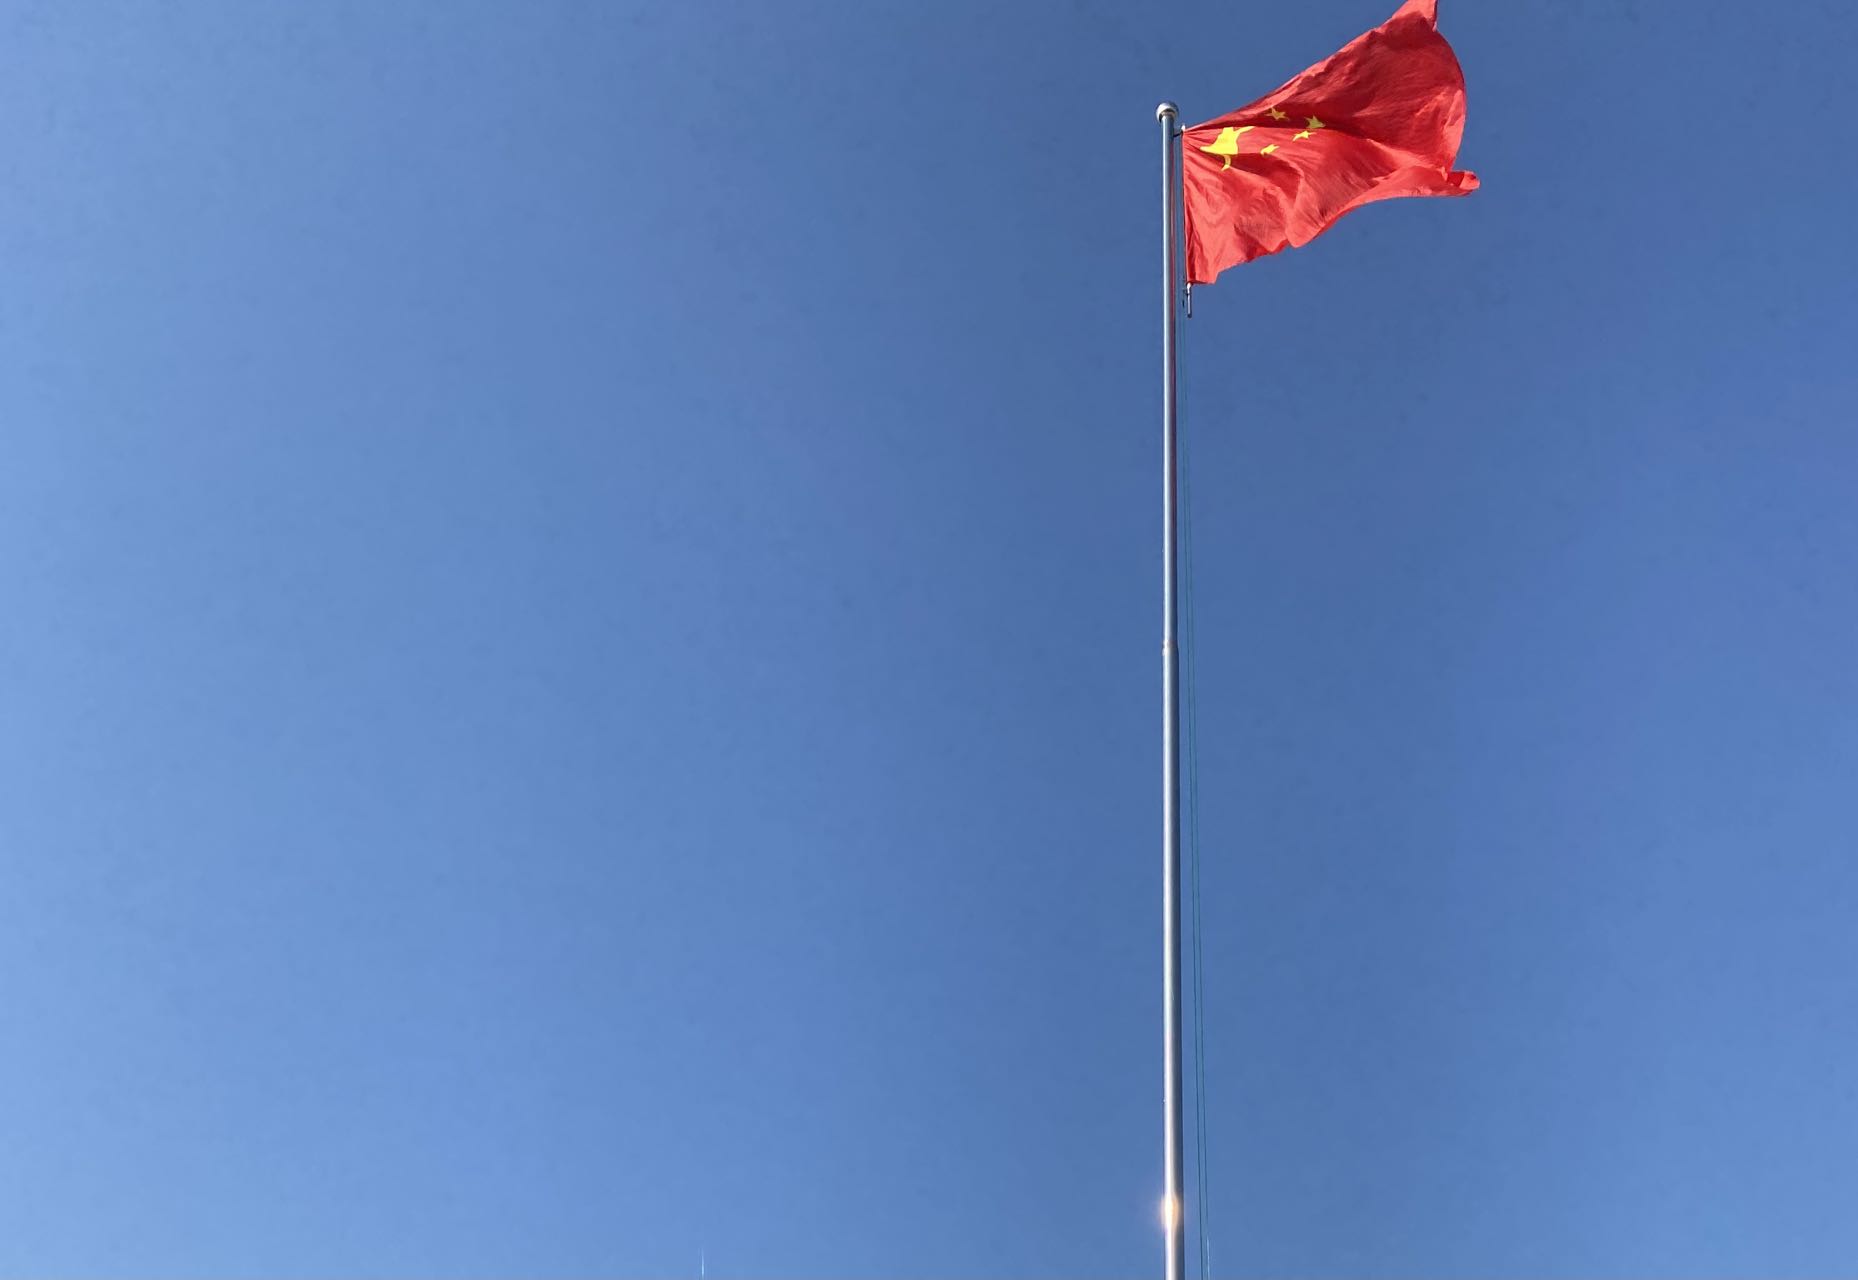 衡水博文学校隆重举行升国旗仪式